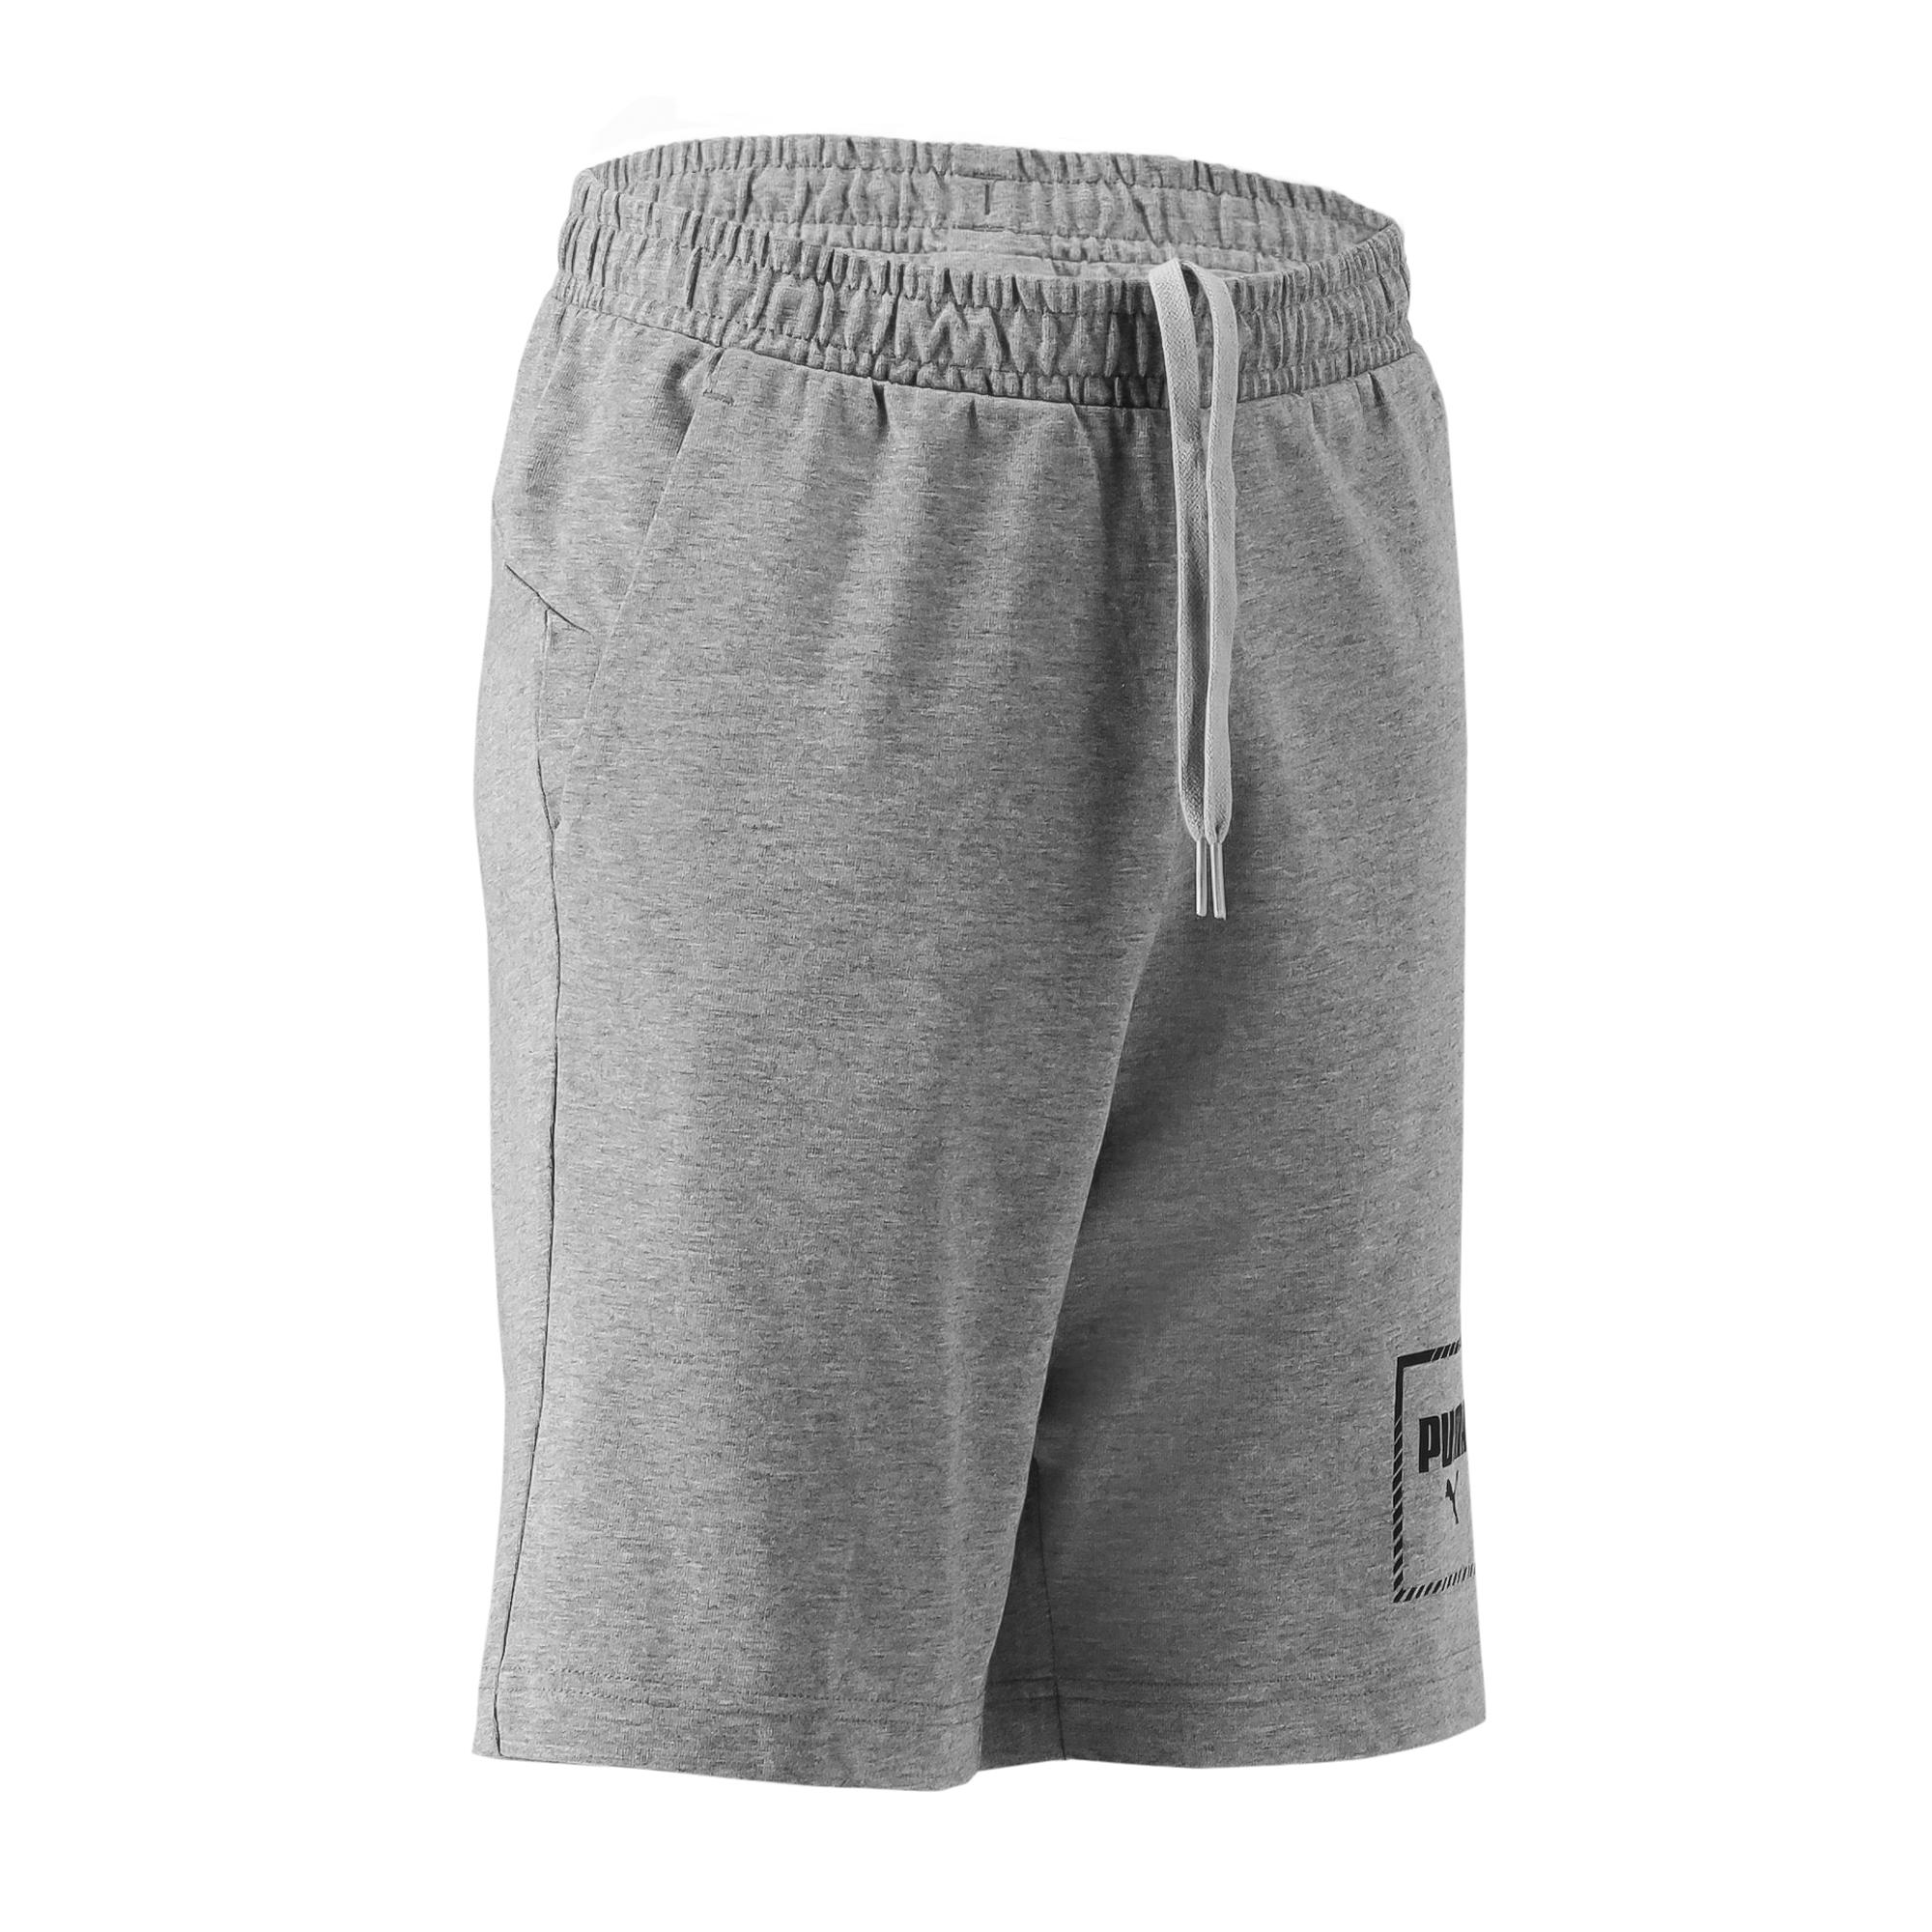 PUMA Boys' Regular Shorts - Grey